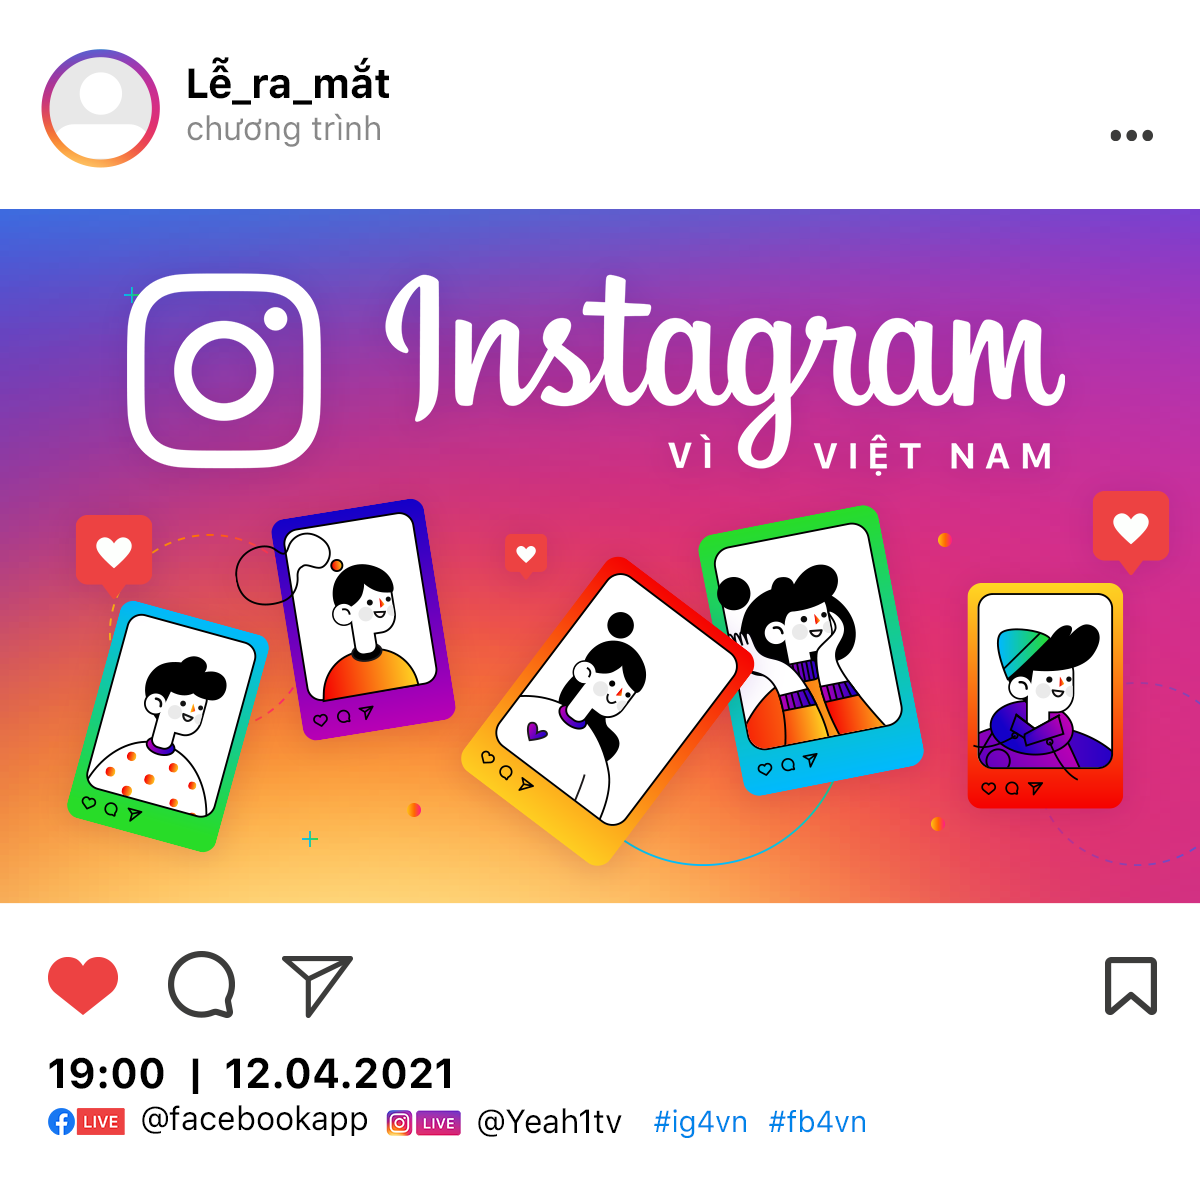 Facebook ra mắt chiến dịch “Instagram vì Việt Nam” - ảnh 1